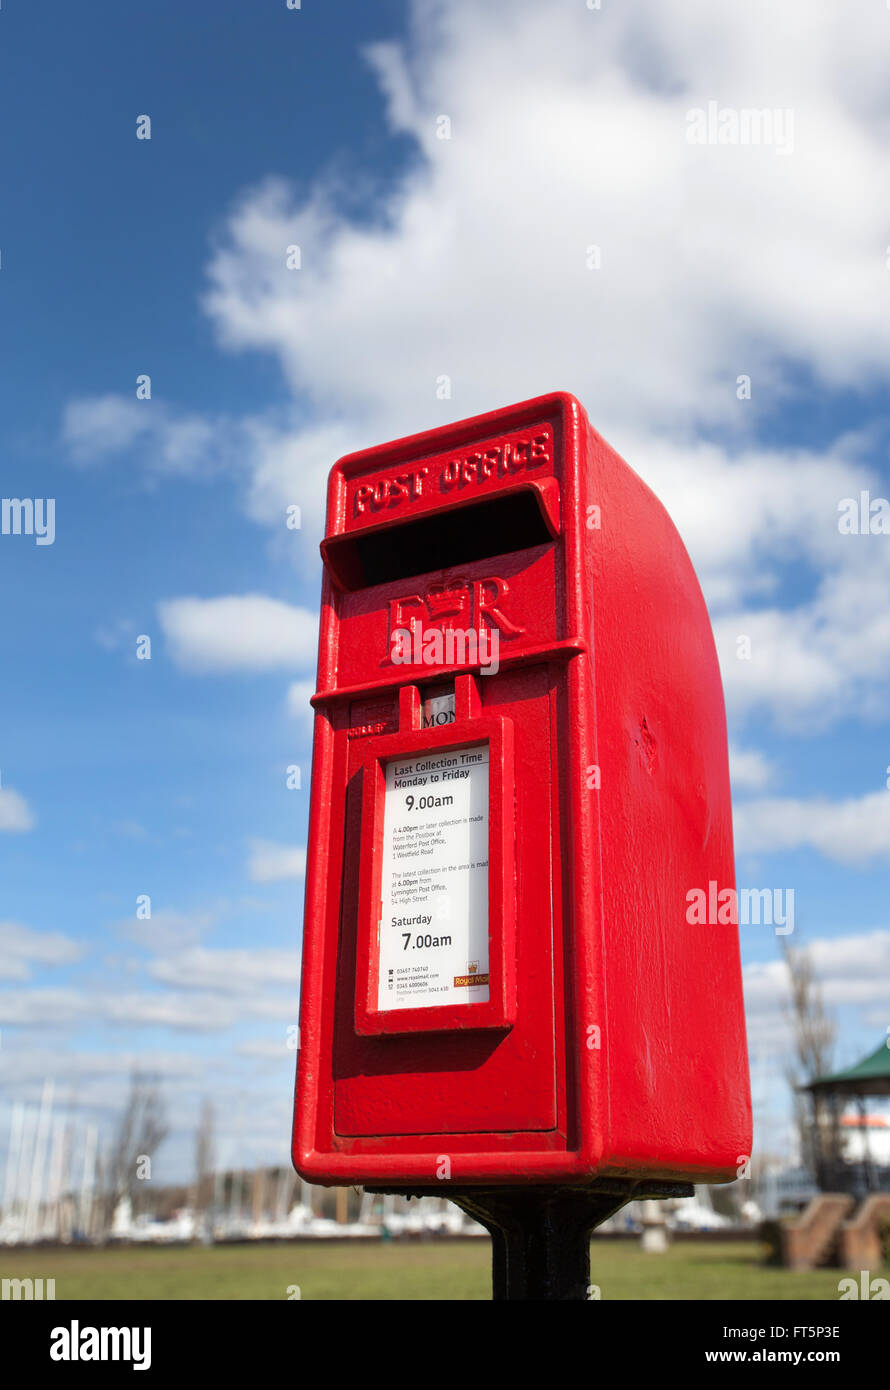 Einen roten Briefkasten vor einem blauen bewölkten Himmel abgebildet Stockfoto